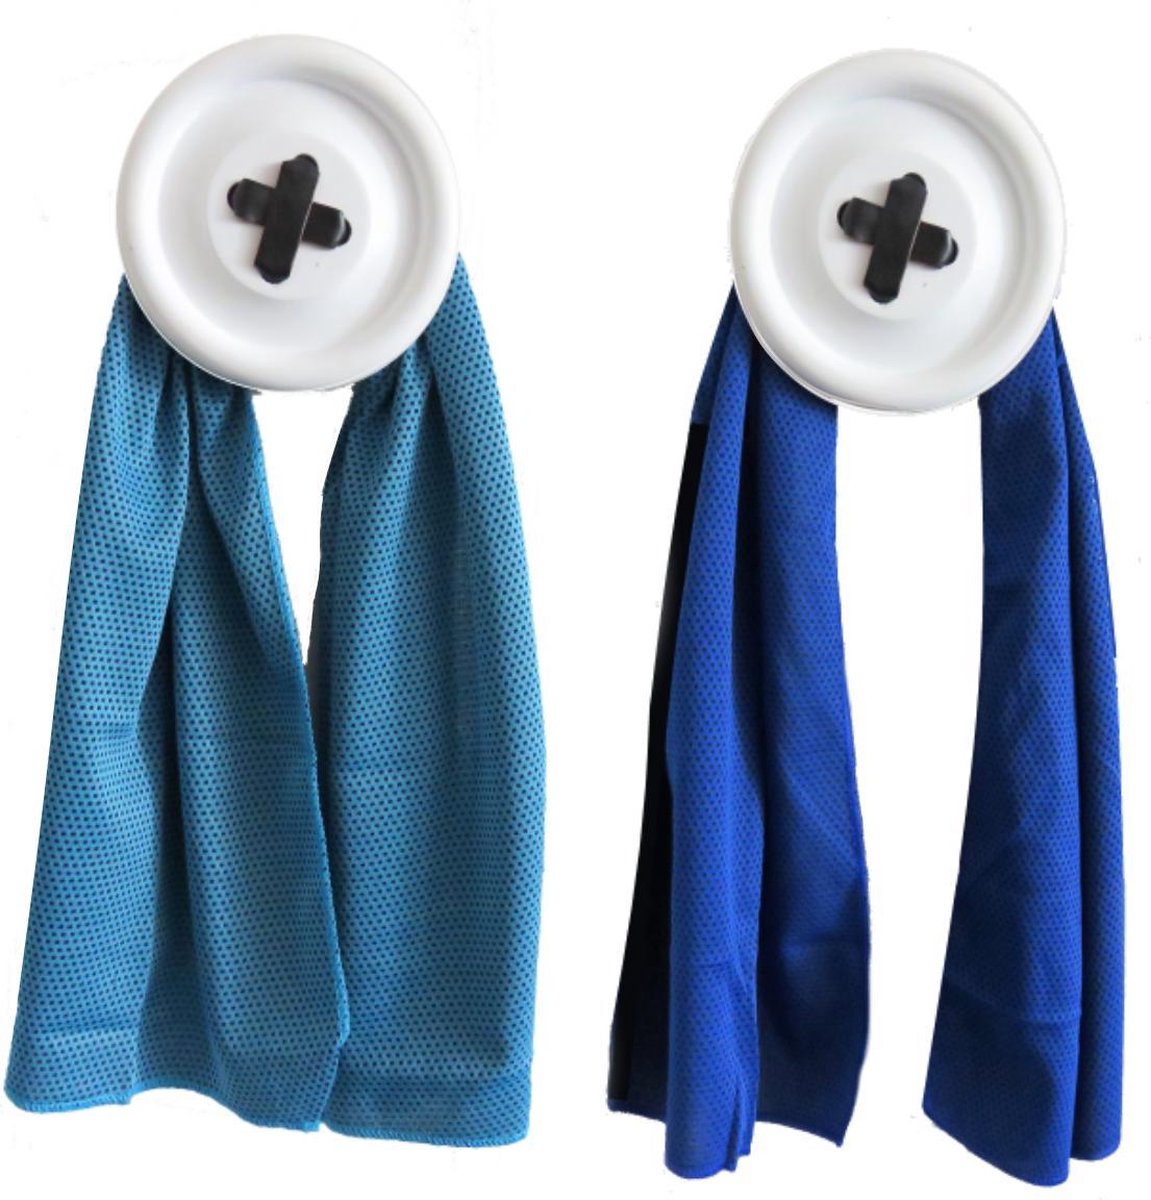 Sport handdoek set - 2 x cool towel - blauw - ice towel- koel handdoek - cold pack - verkoelende handdoek - sterk absorberend - snel drogend - yoga - fitness - hard lopen